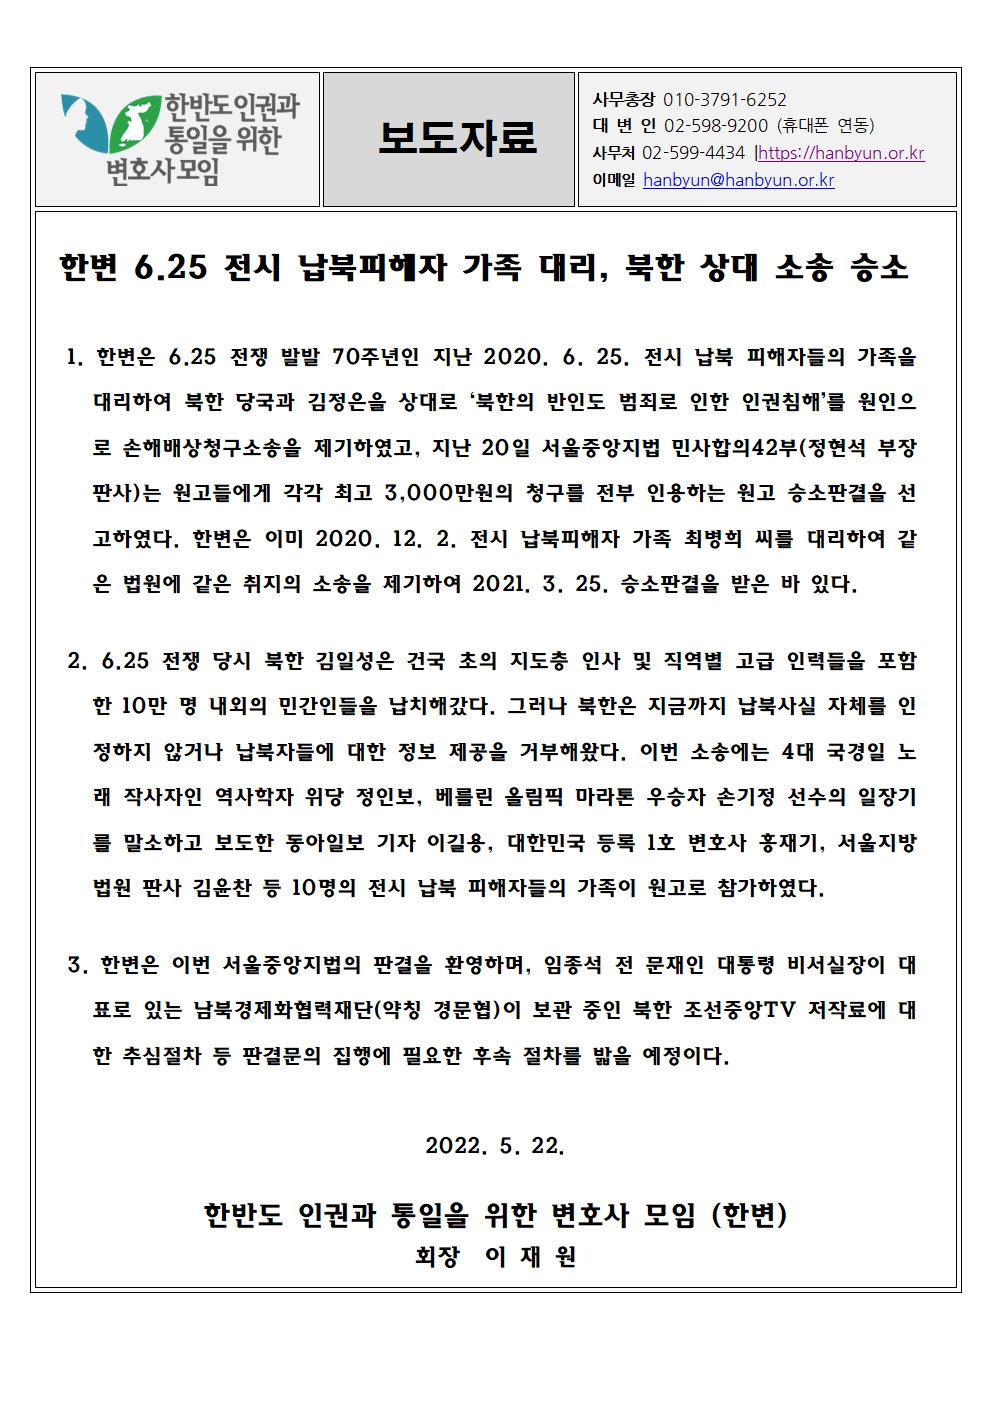 [한변 보도자료] 한변 6.25 전시 납북피해자 가족 대리, 북한 상대 소송 승소 revised001.jpg